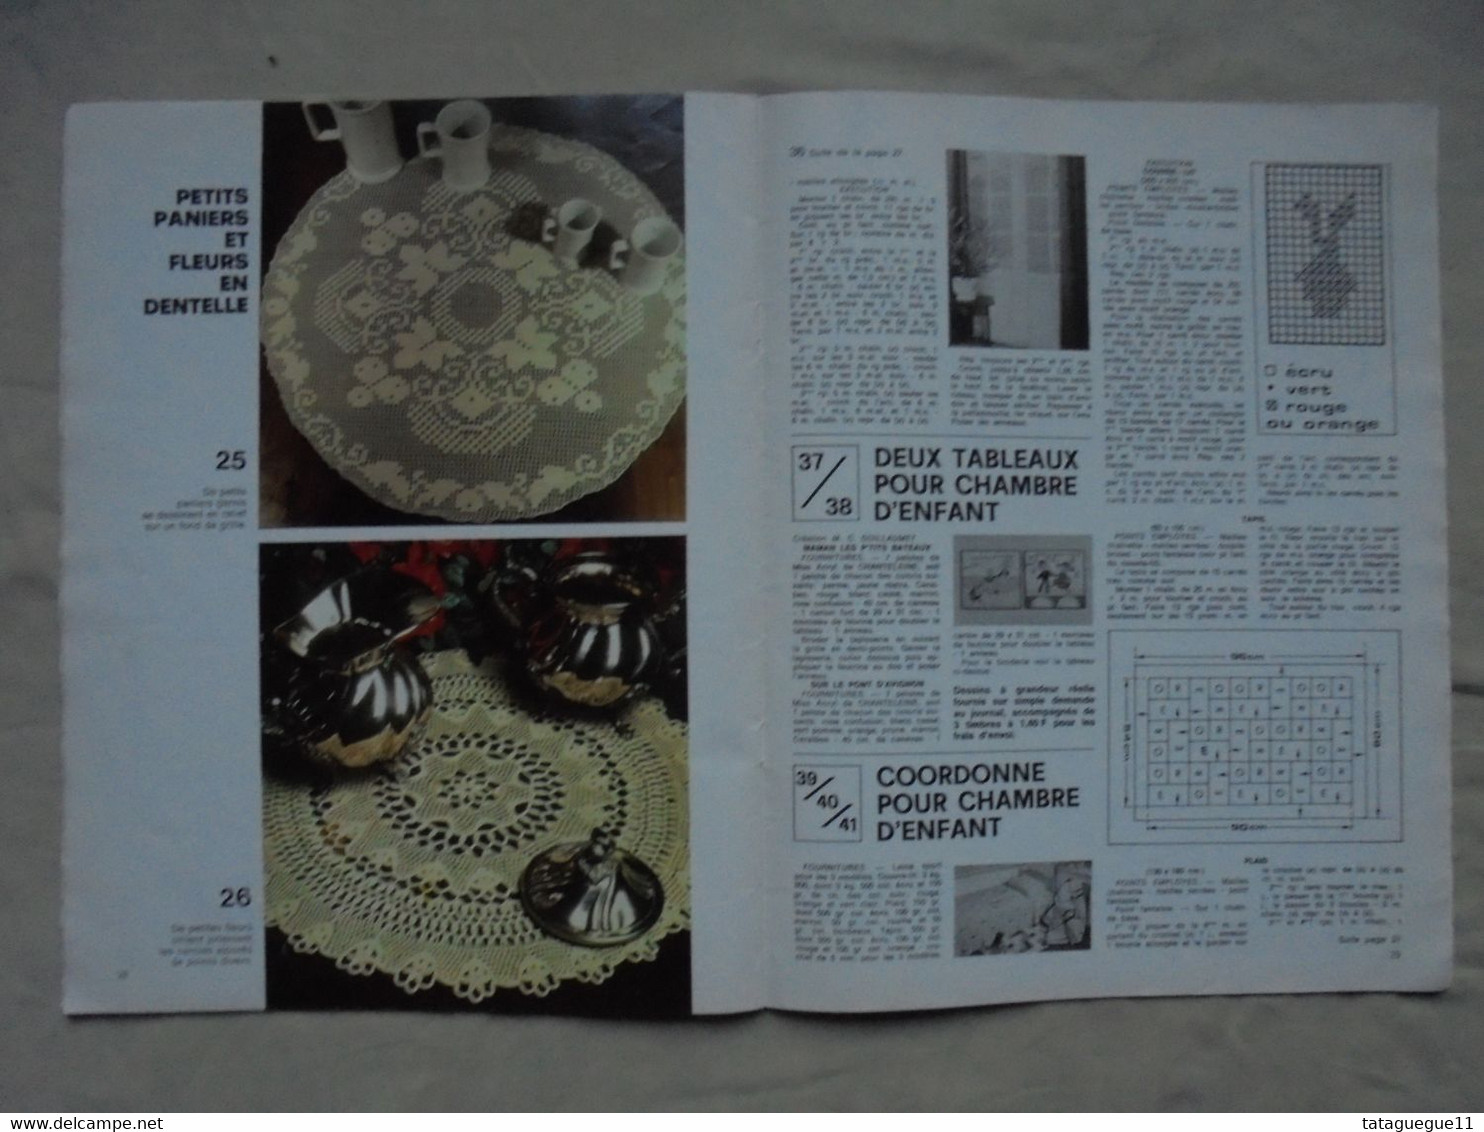 Ancien - Revue Votre Magazine Tricot Hors série 54 travaux de décoration 1980